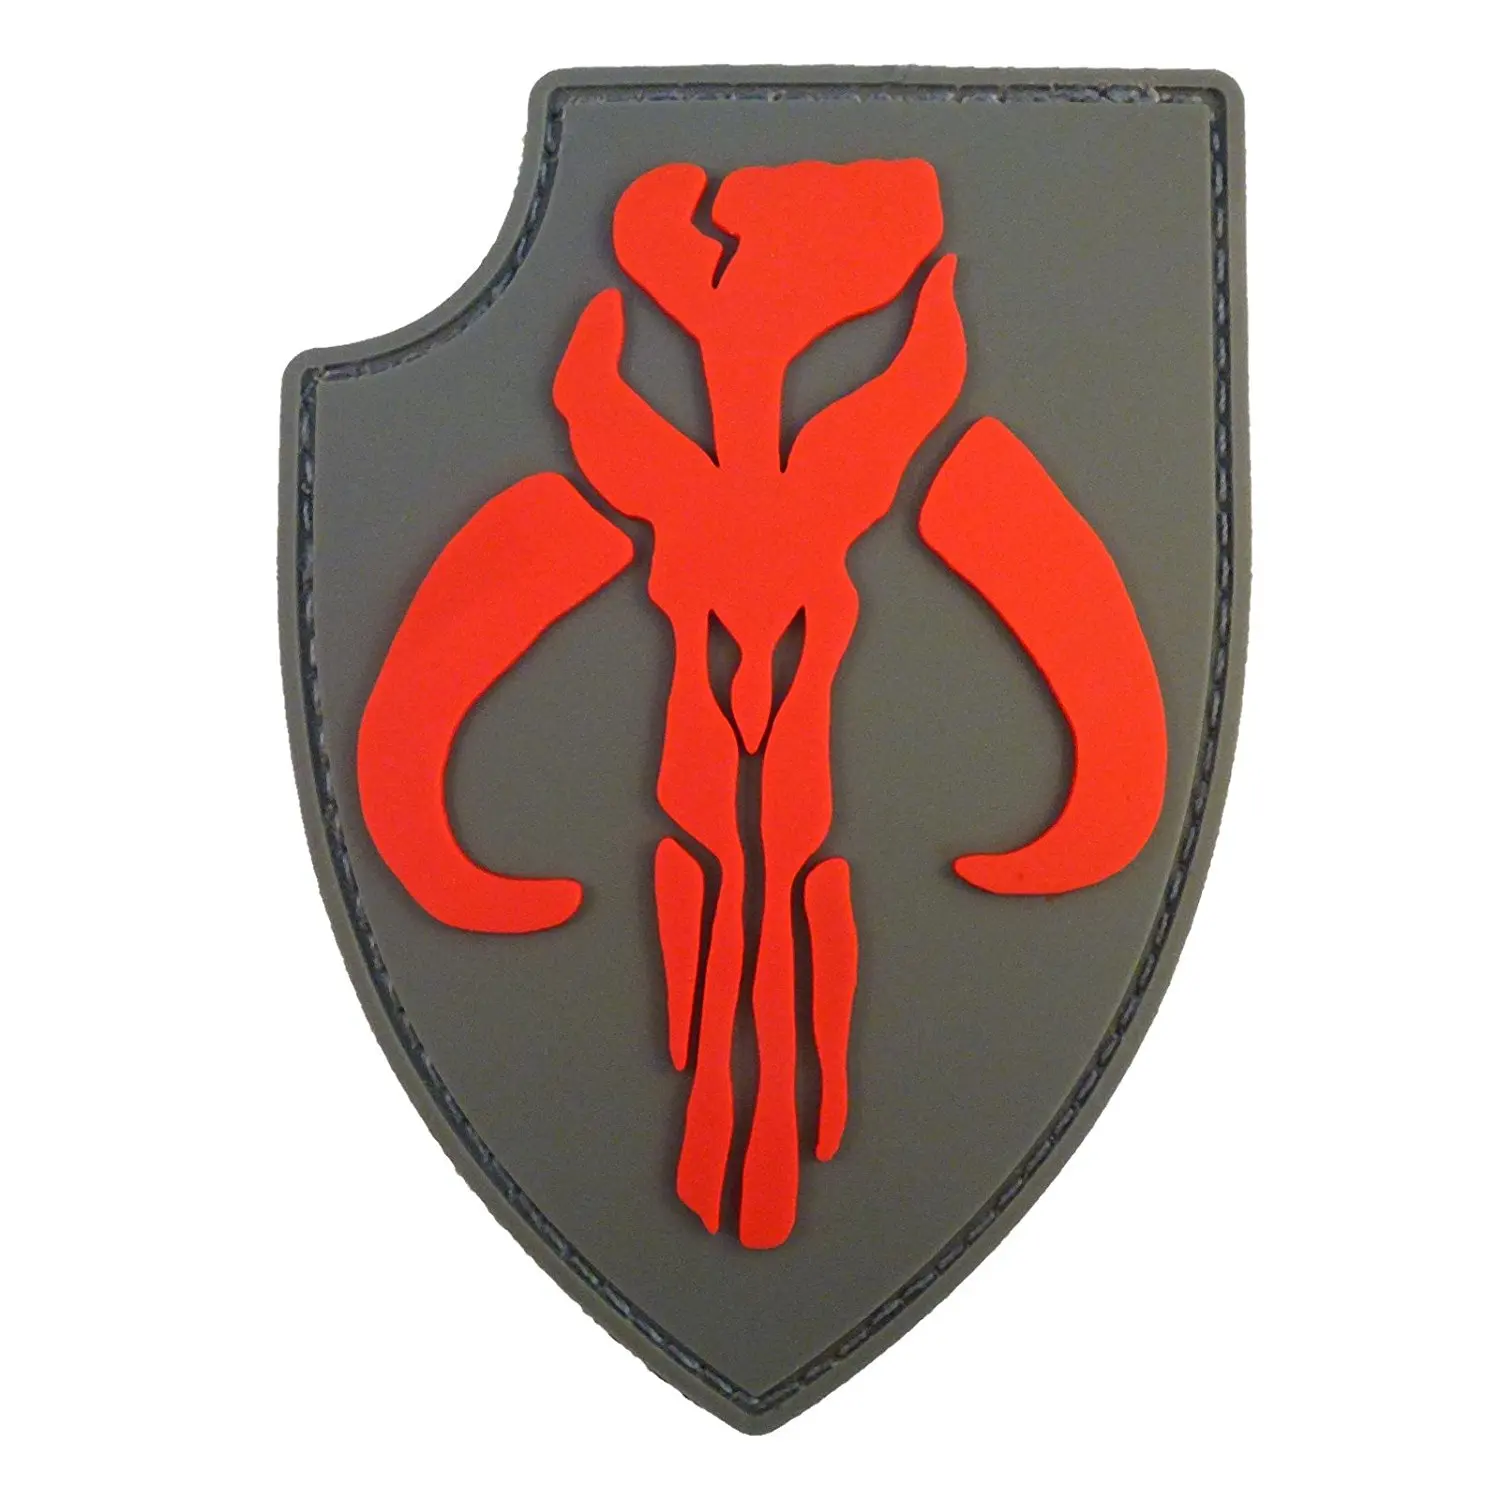 D shield. Mandalorian нашивка. Mandalorian жетон. Грязерог Мандалорец эмблема. Mandalorian Crest эмблема.